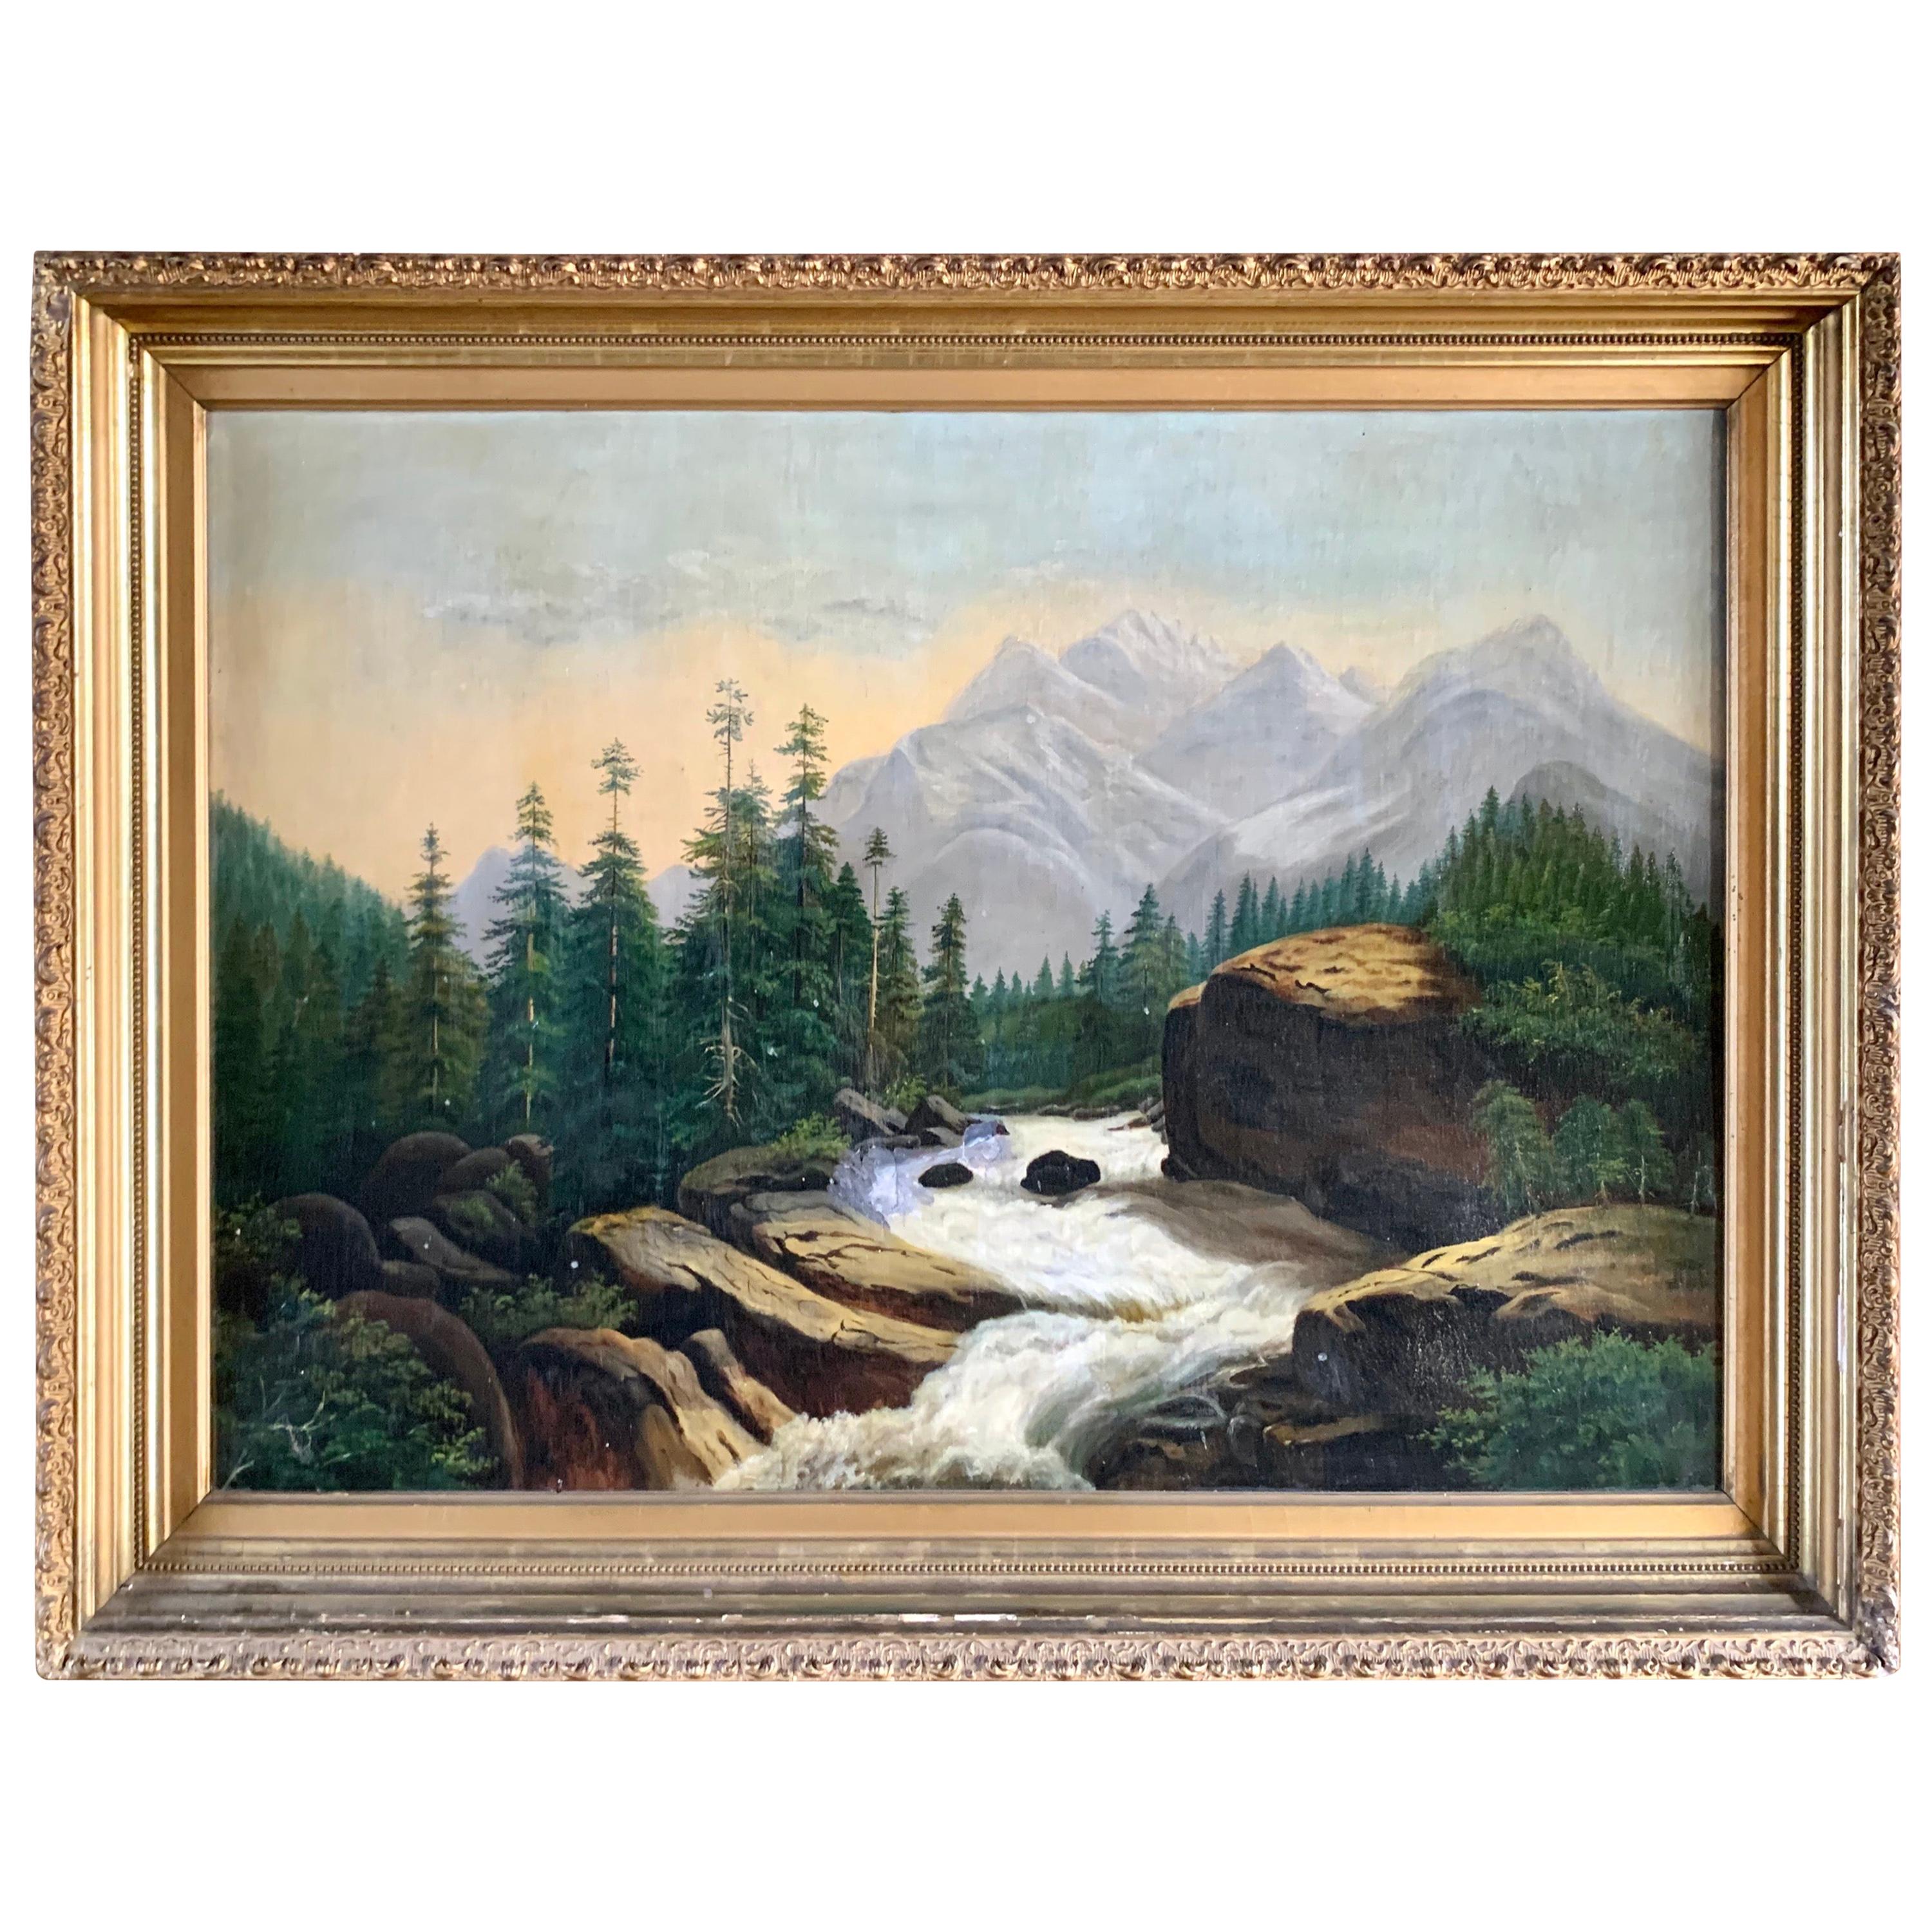 Antique Original Landscape Oil Painting of Mountains Hudson River School